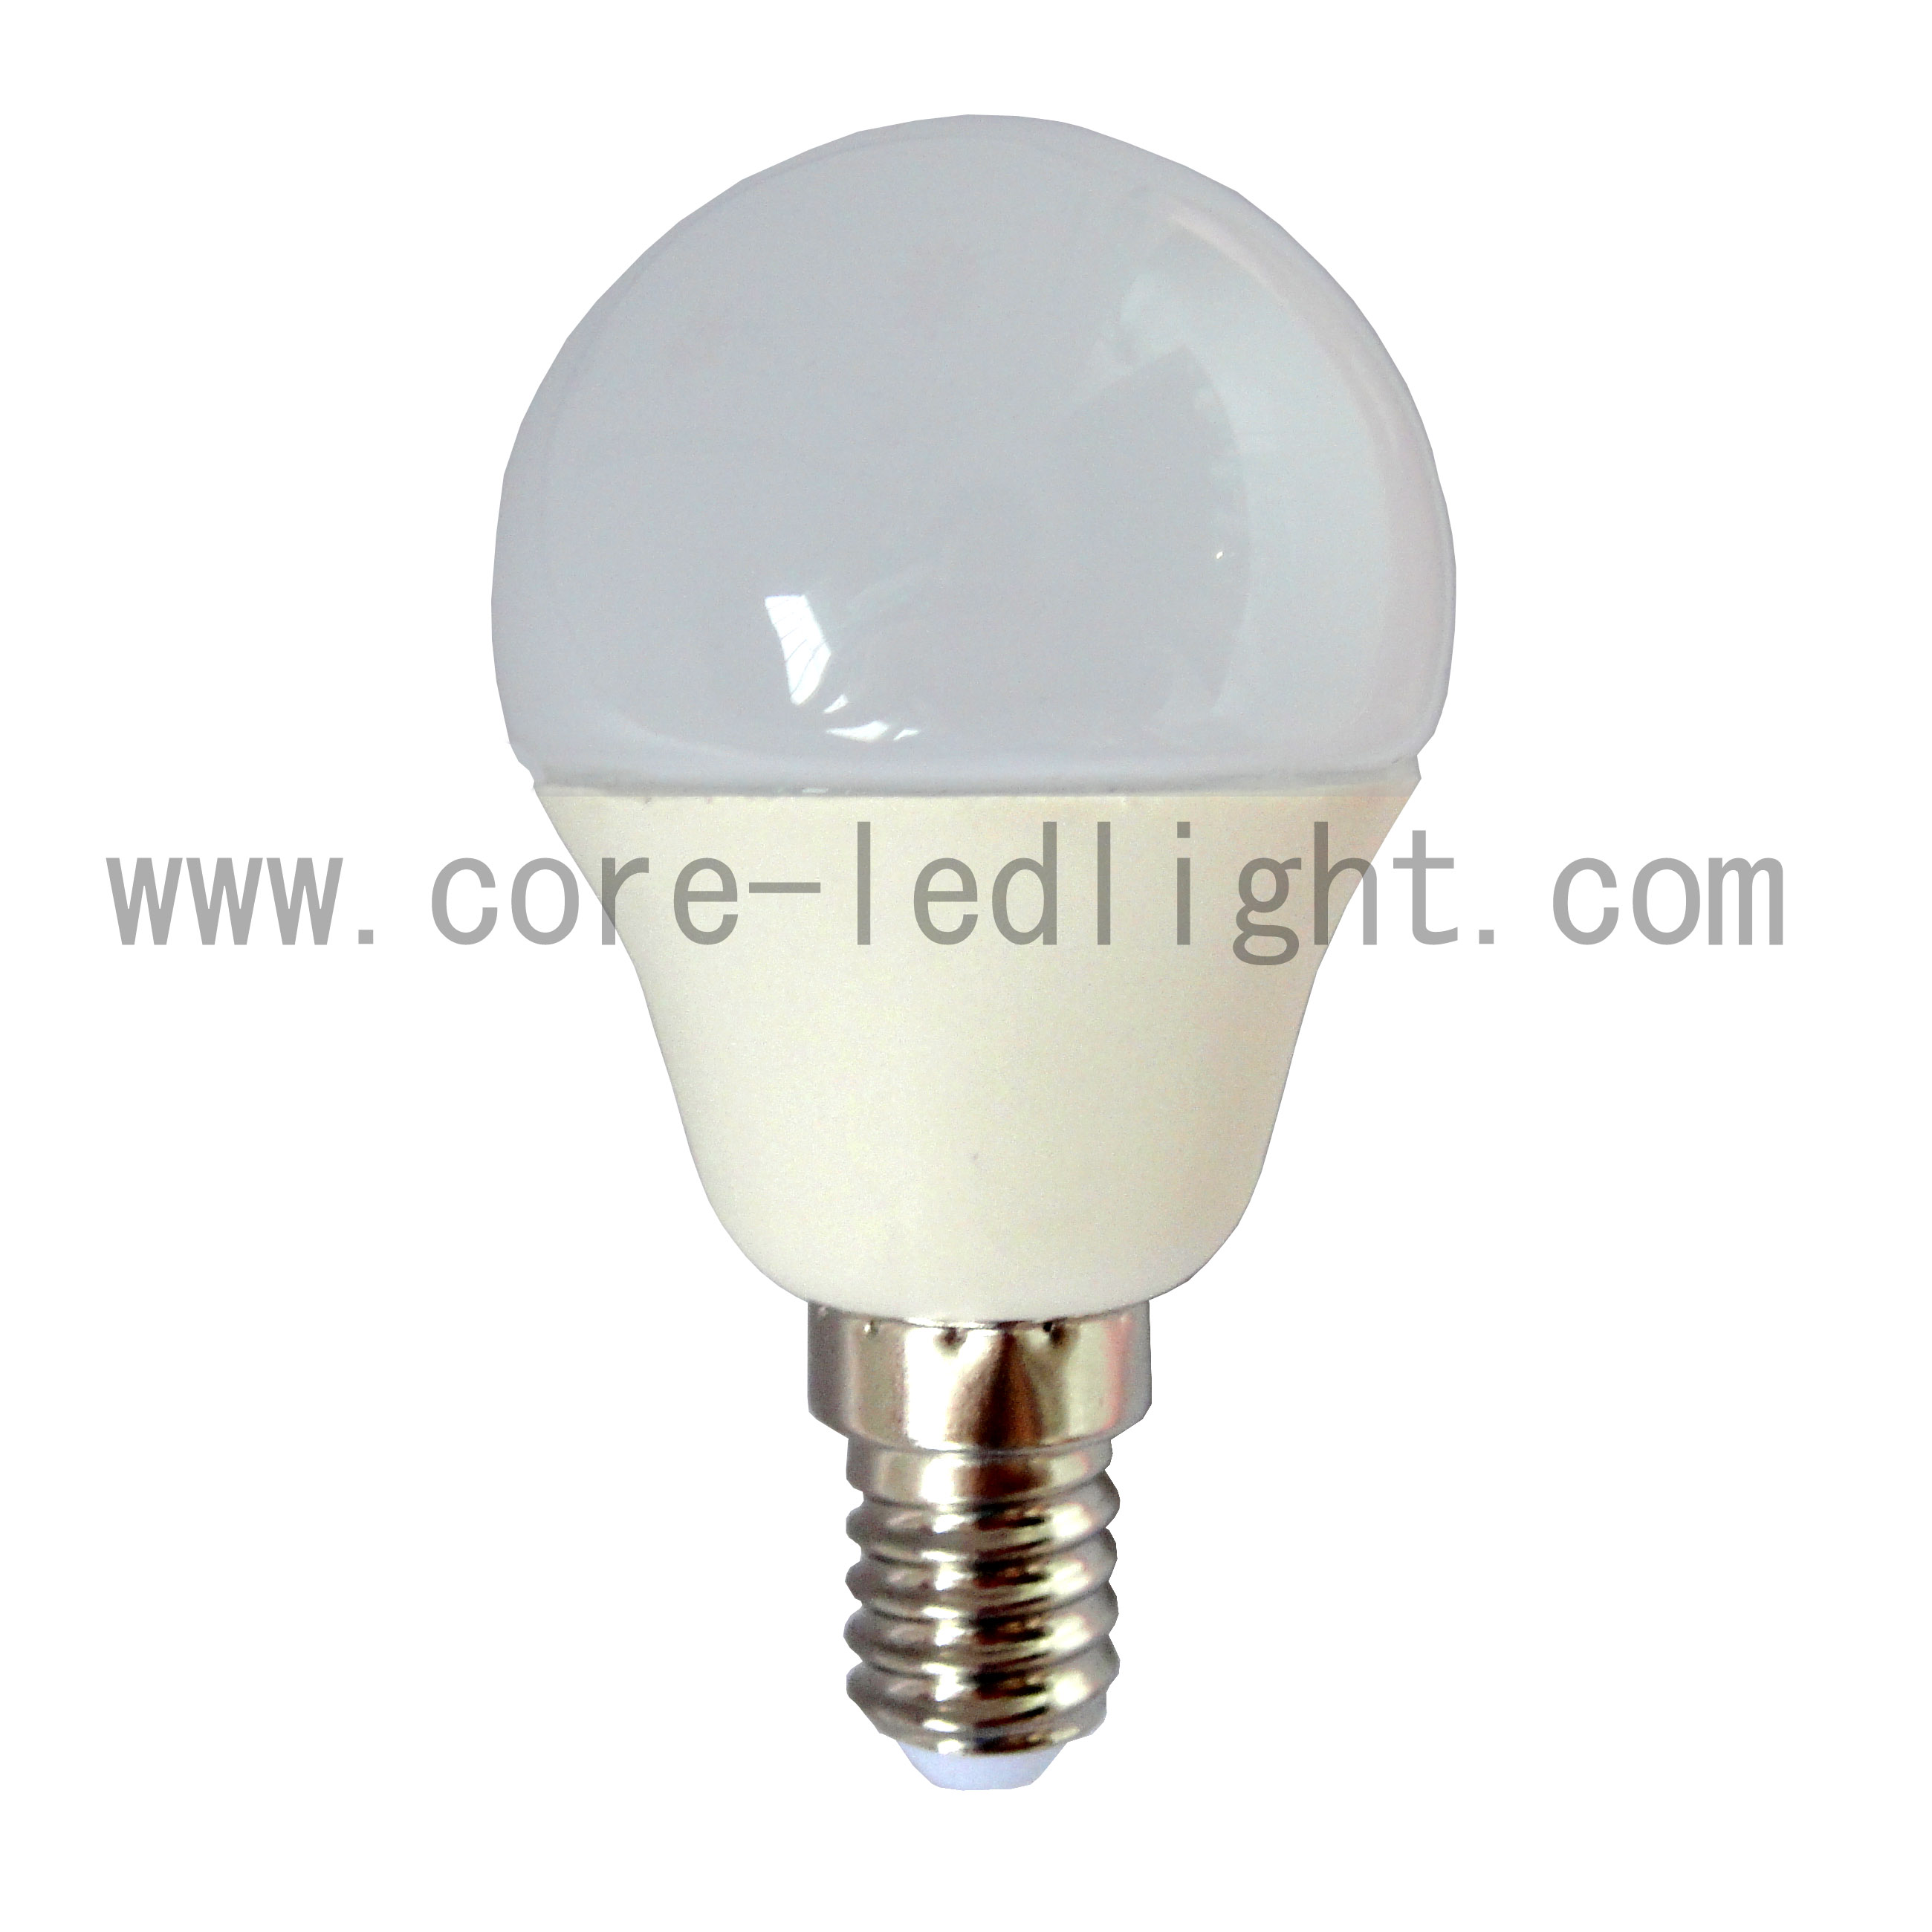 CL G45 LED Bulb Lamp